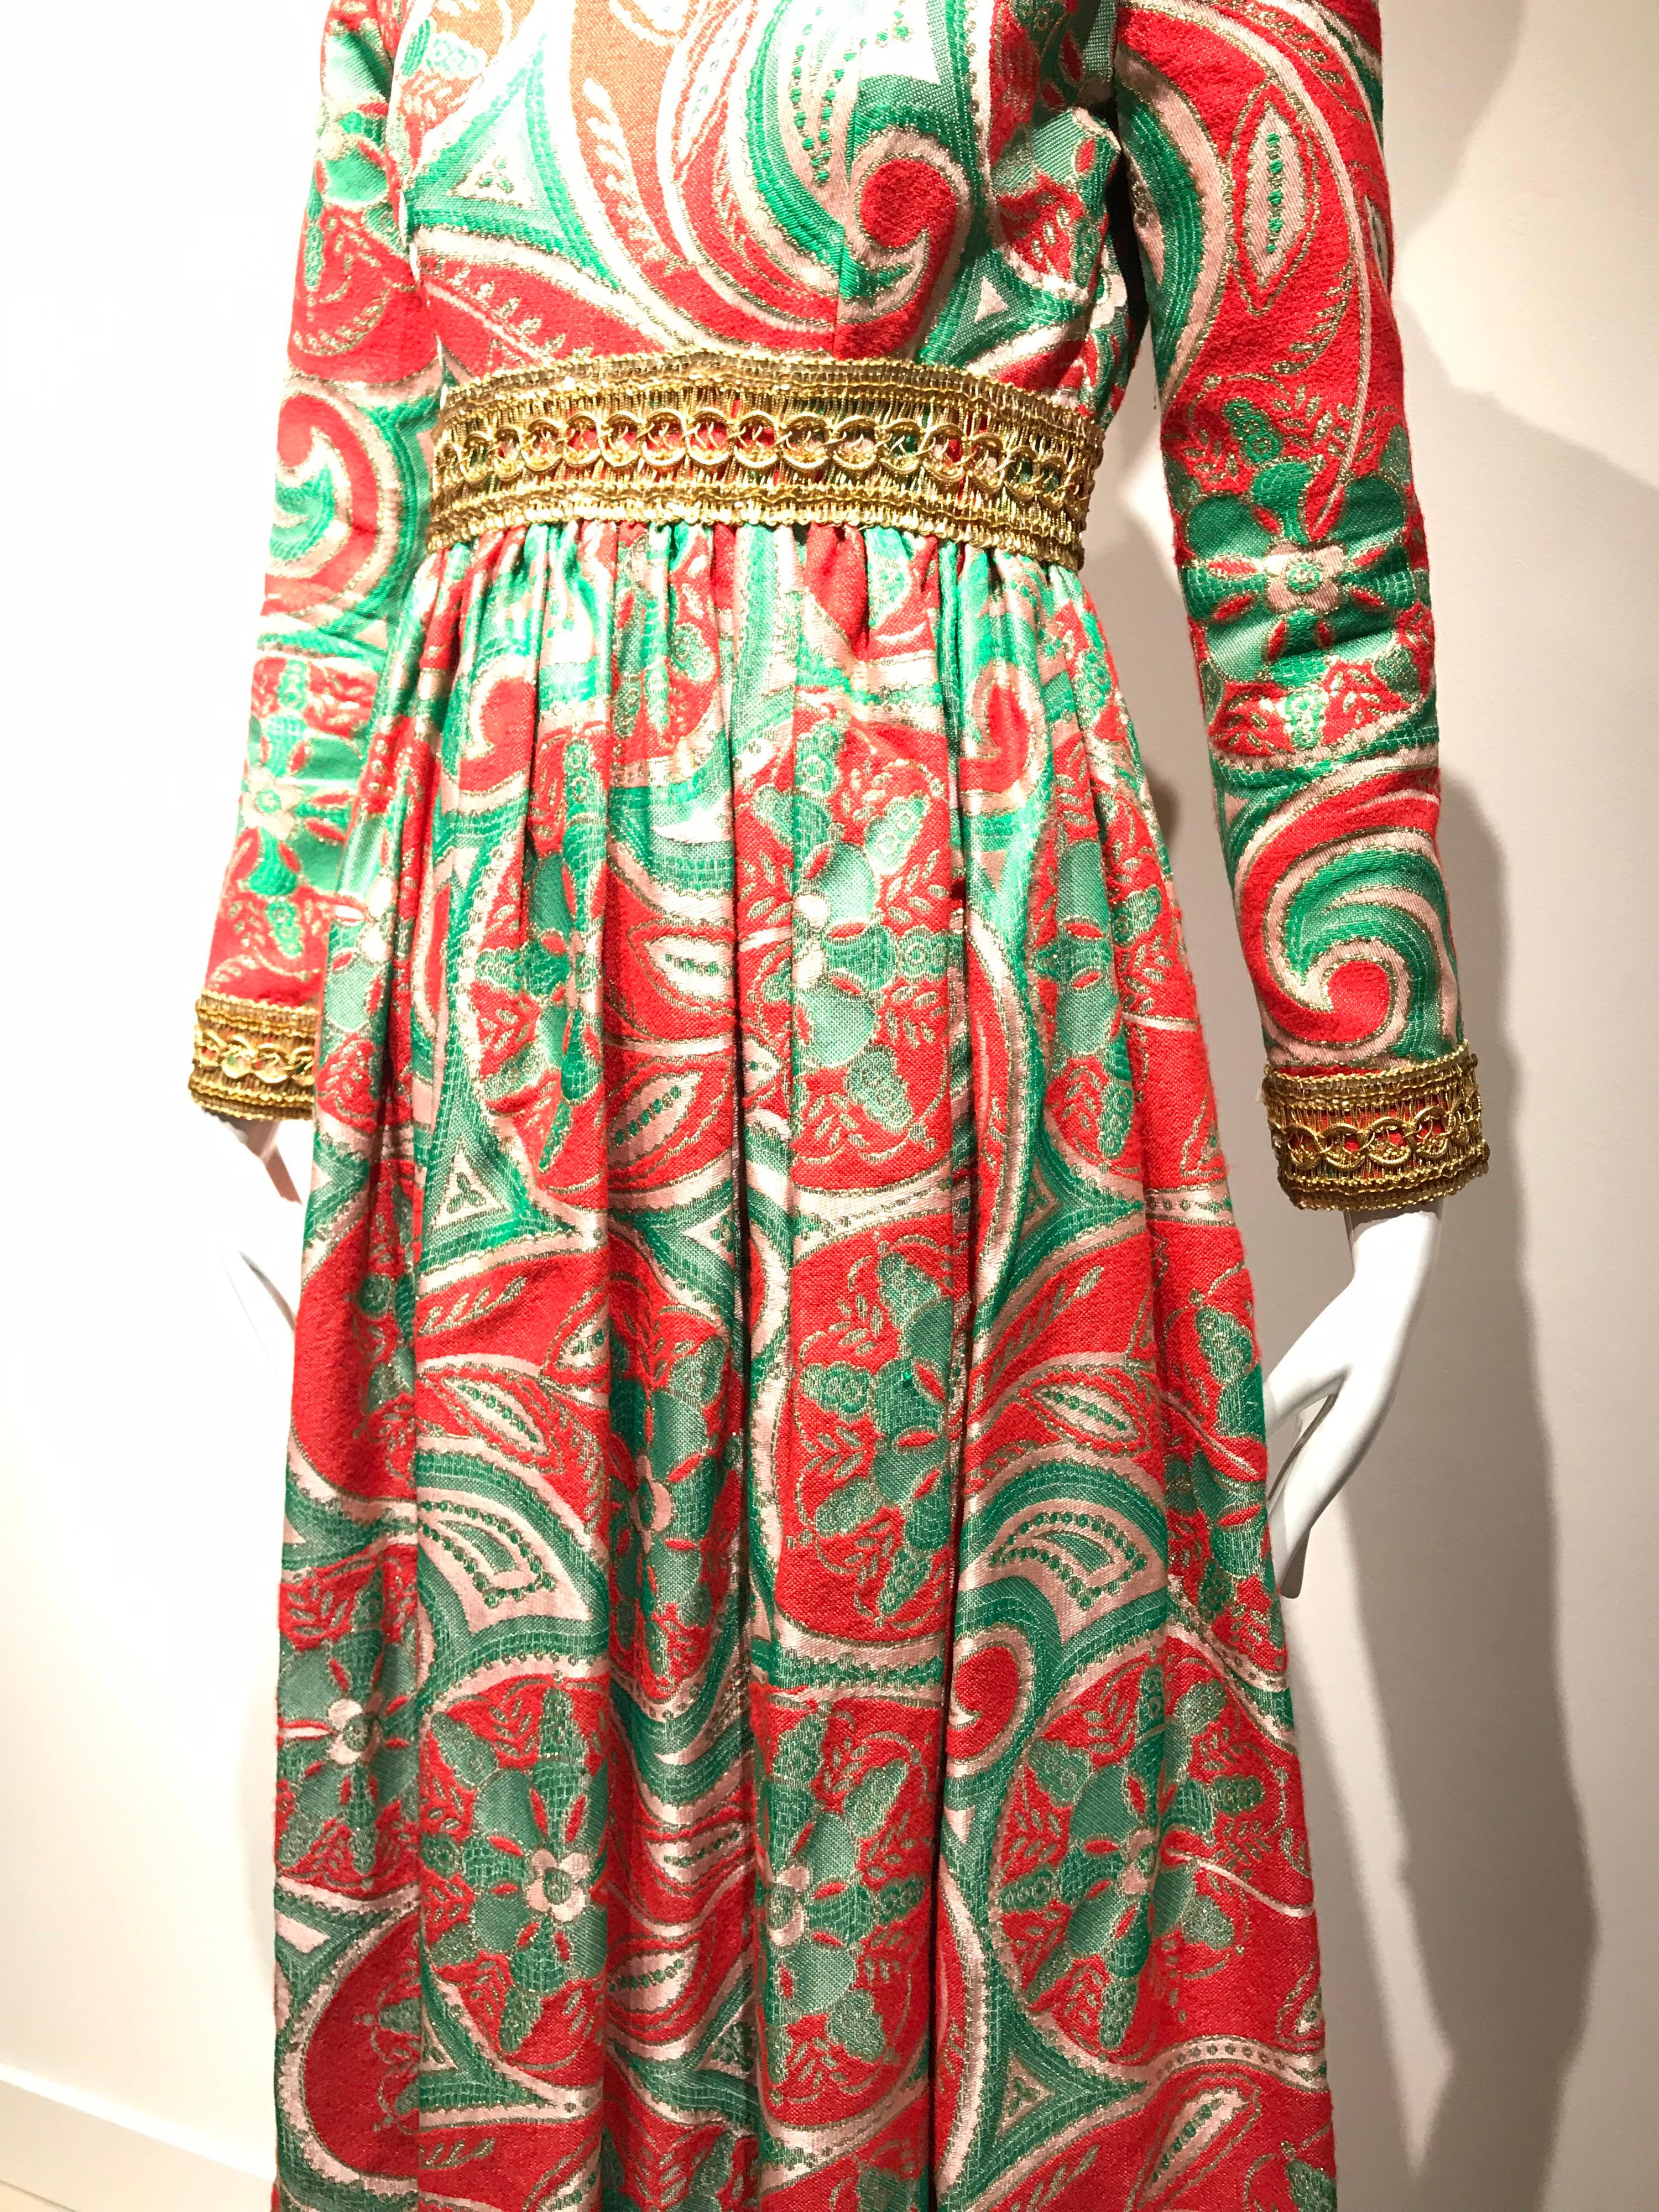 Vintage Oscar De La Renta Red and Green Brocade Dress 1